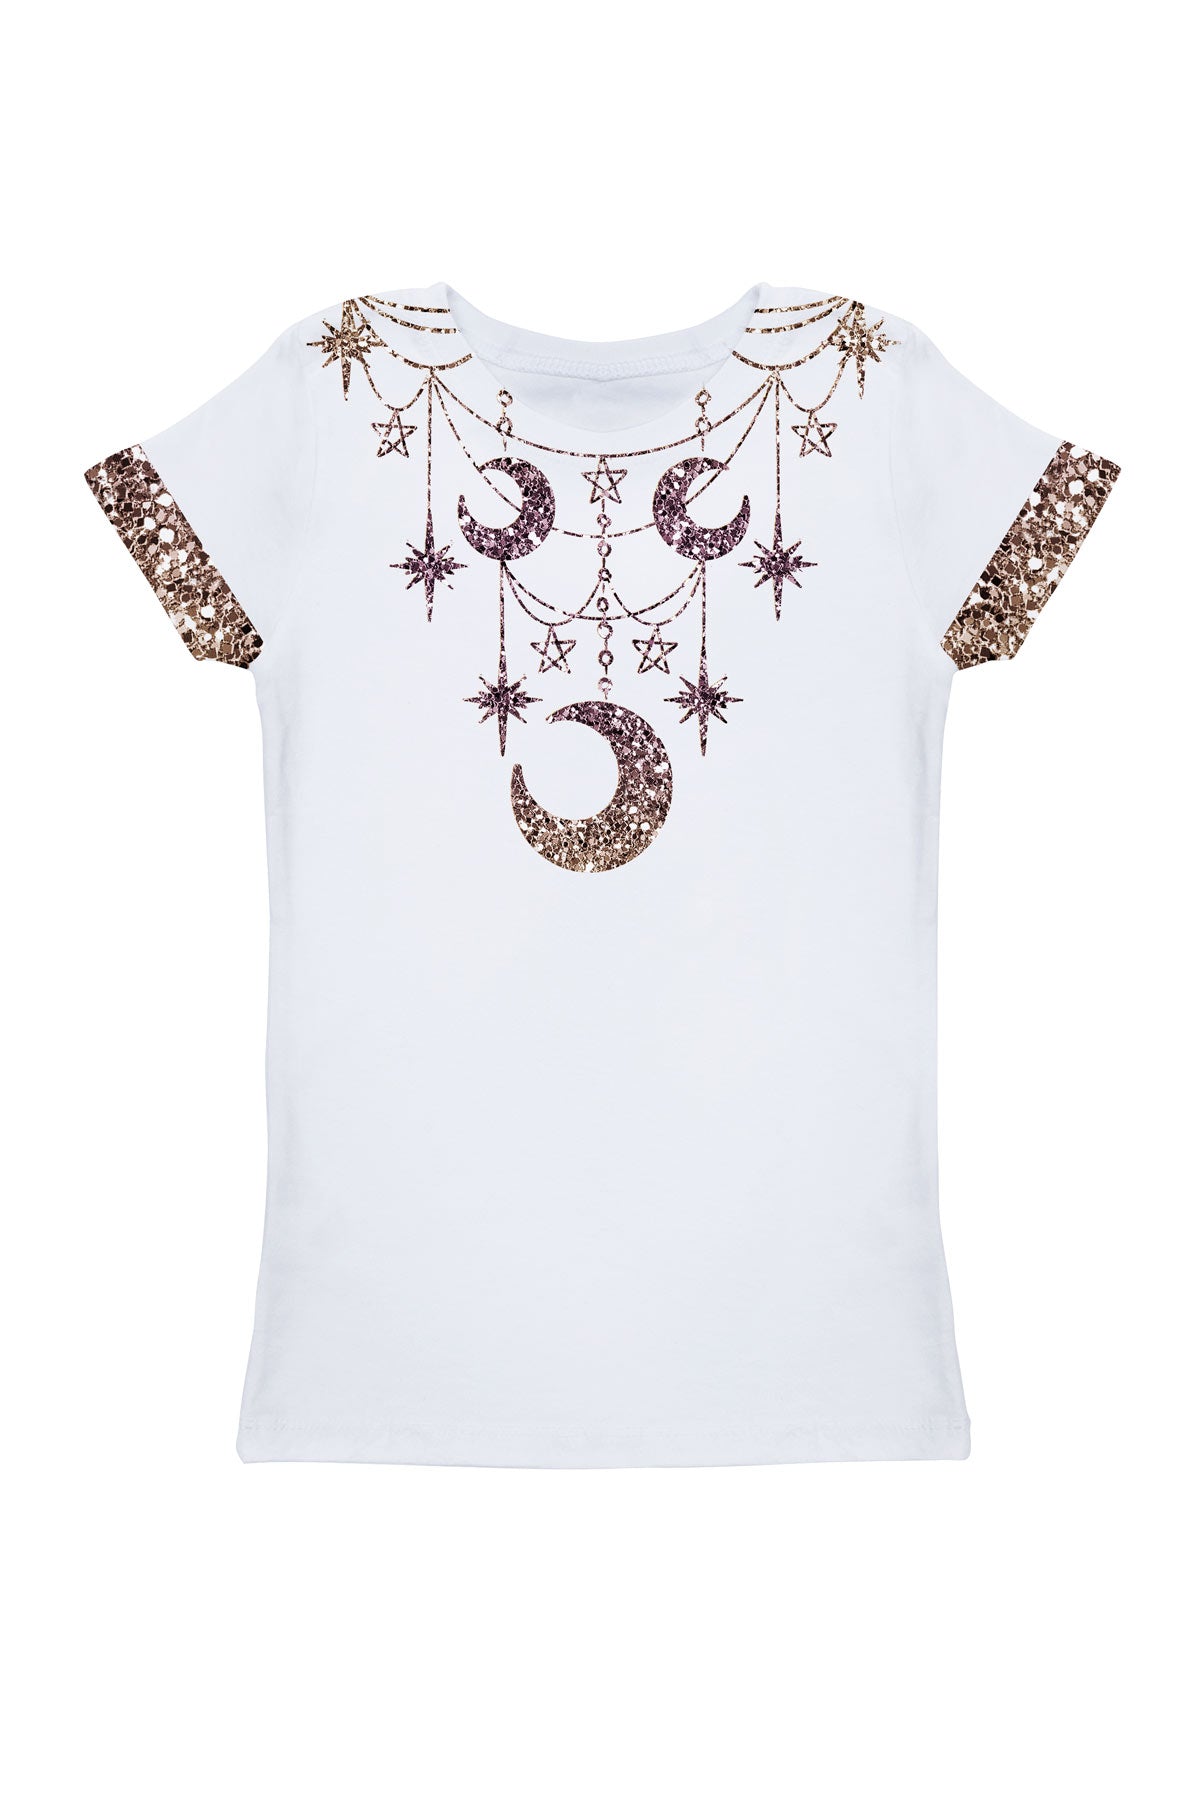 Shimmerfest Zoe White Glitter Designer Printed Holiday T-Shirt - Girls - Pineapple Clothing